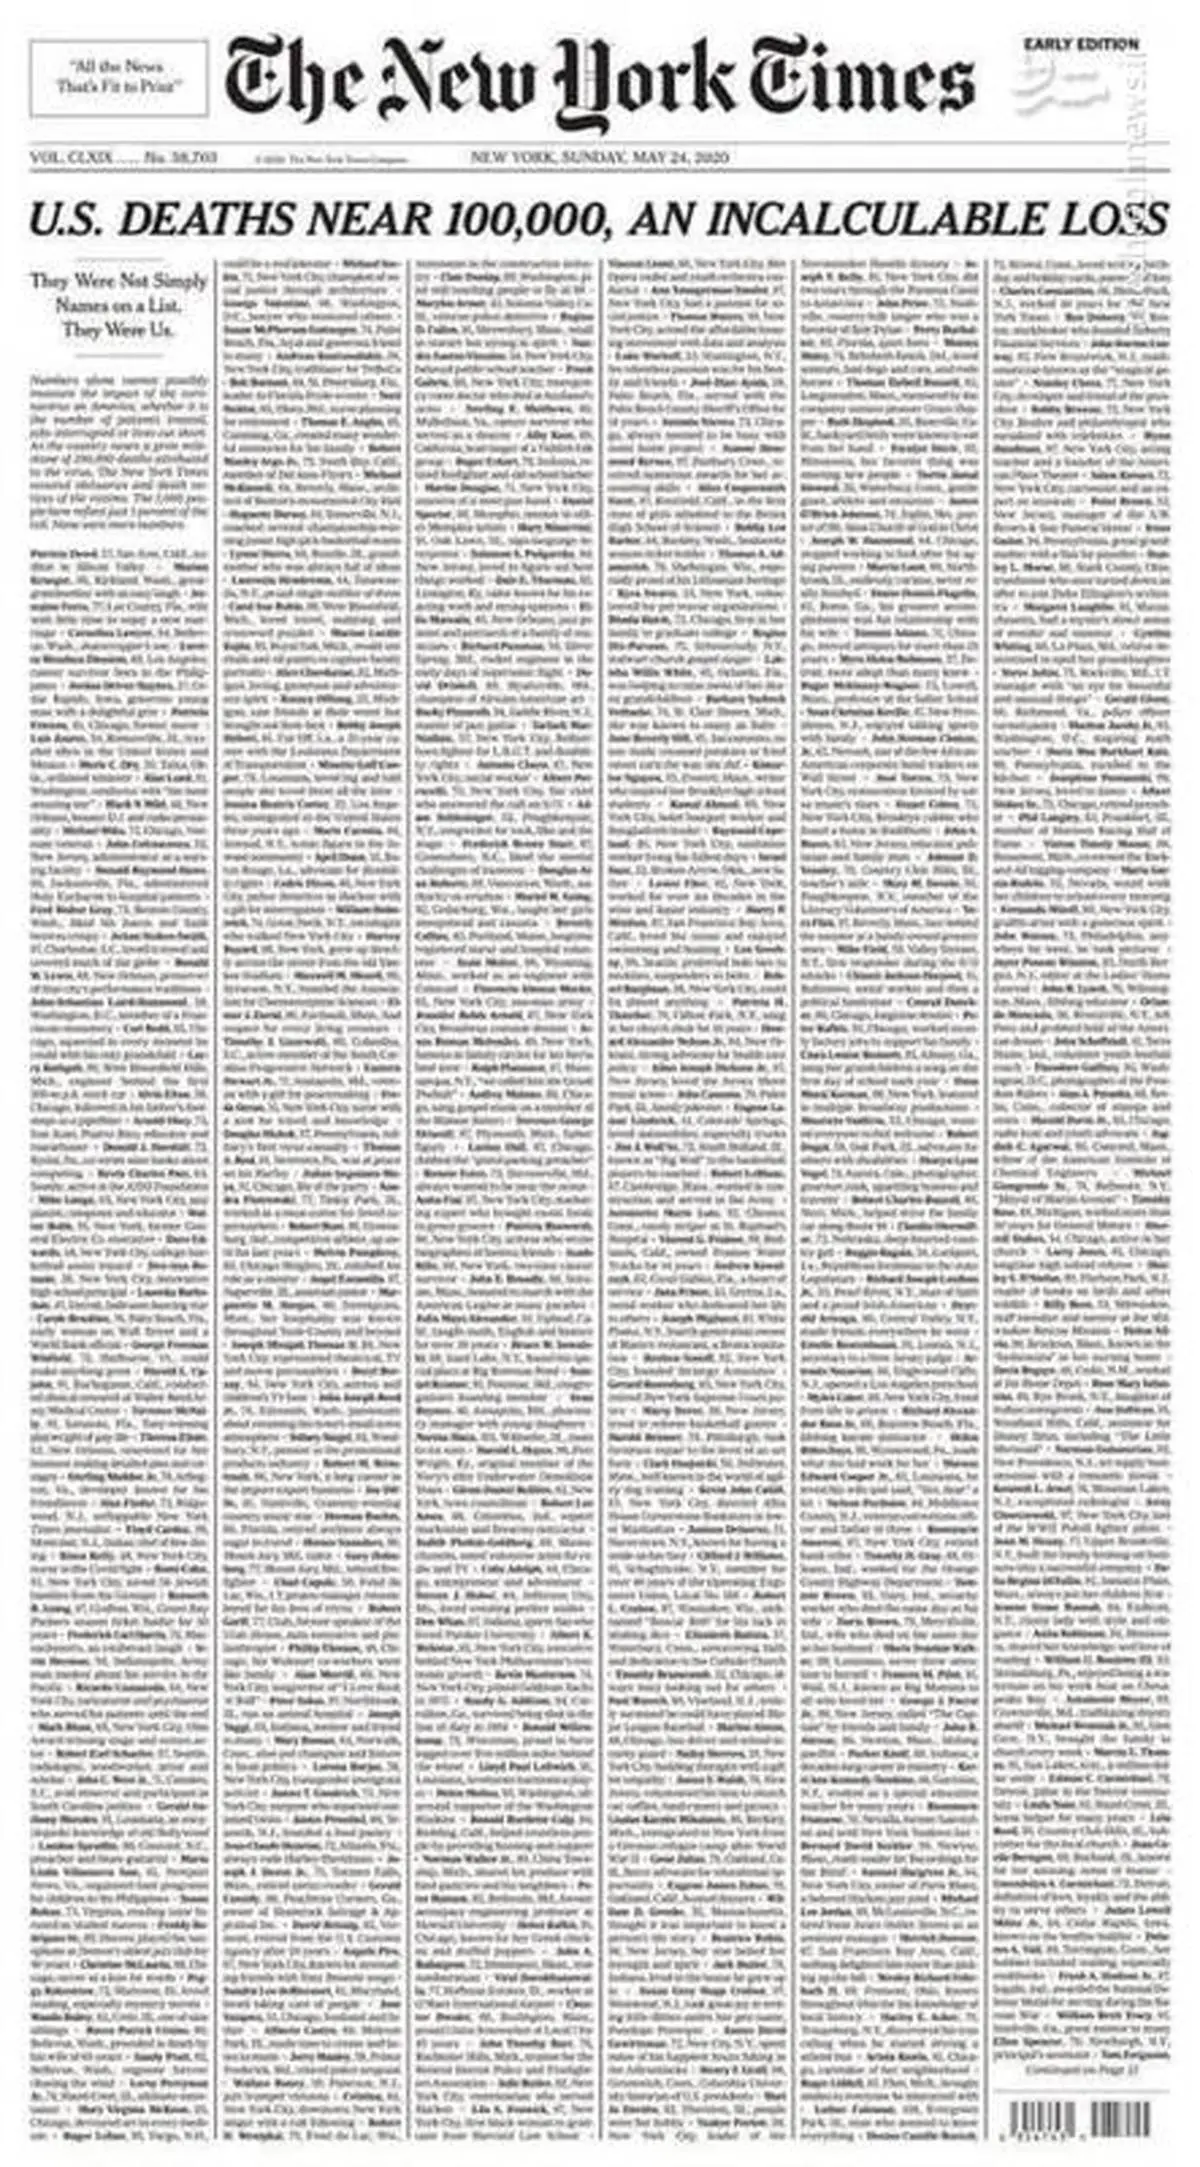 اسامی قربانیان کرونا در آمریکا روی صفحه اول نیویورک تایمز